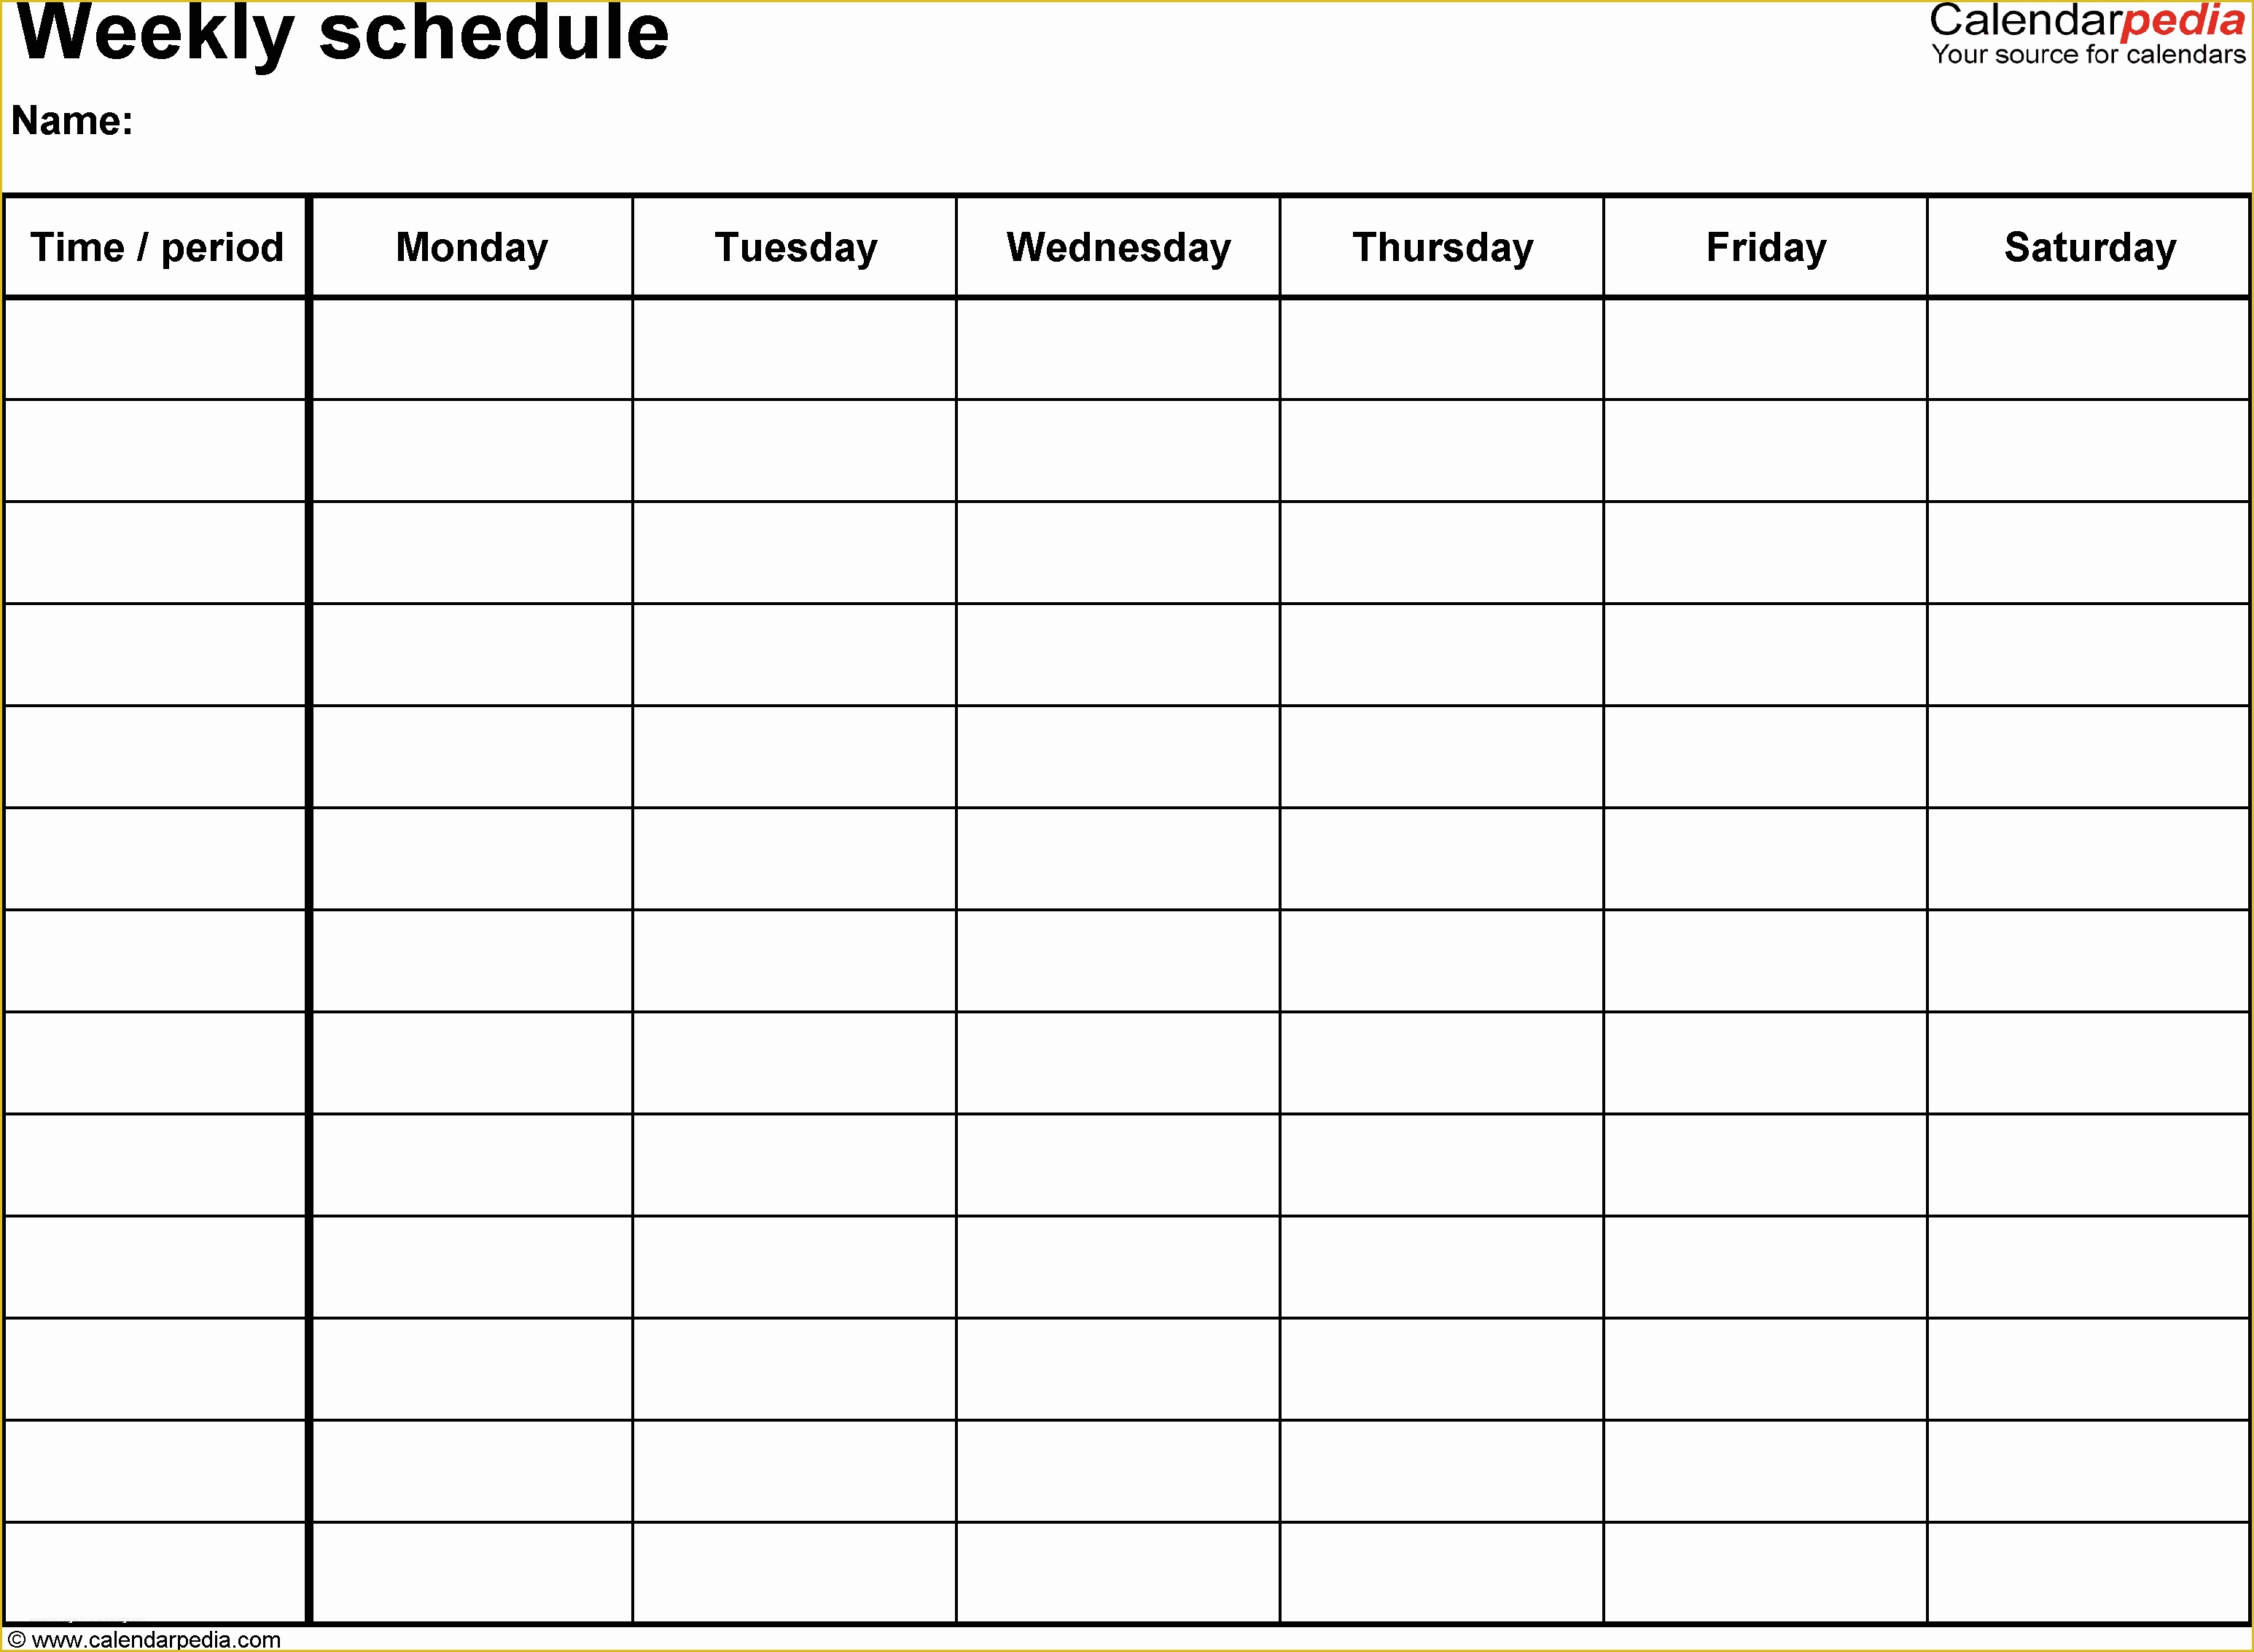 Free 3 Week Look Ahead Schedule Template Of Free Weekly Schedule Templates for Excel 18 Templates